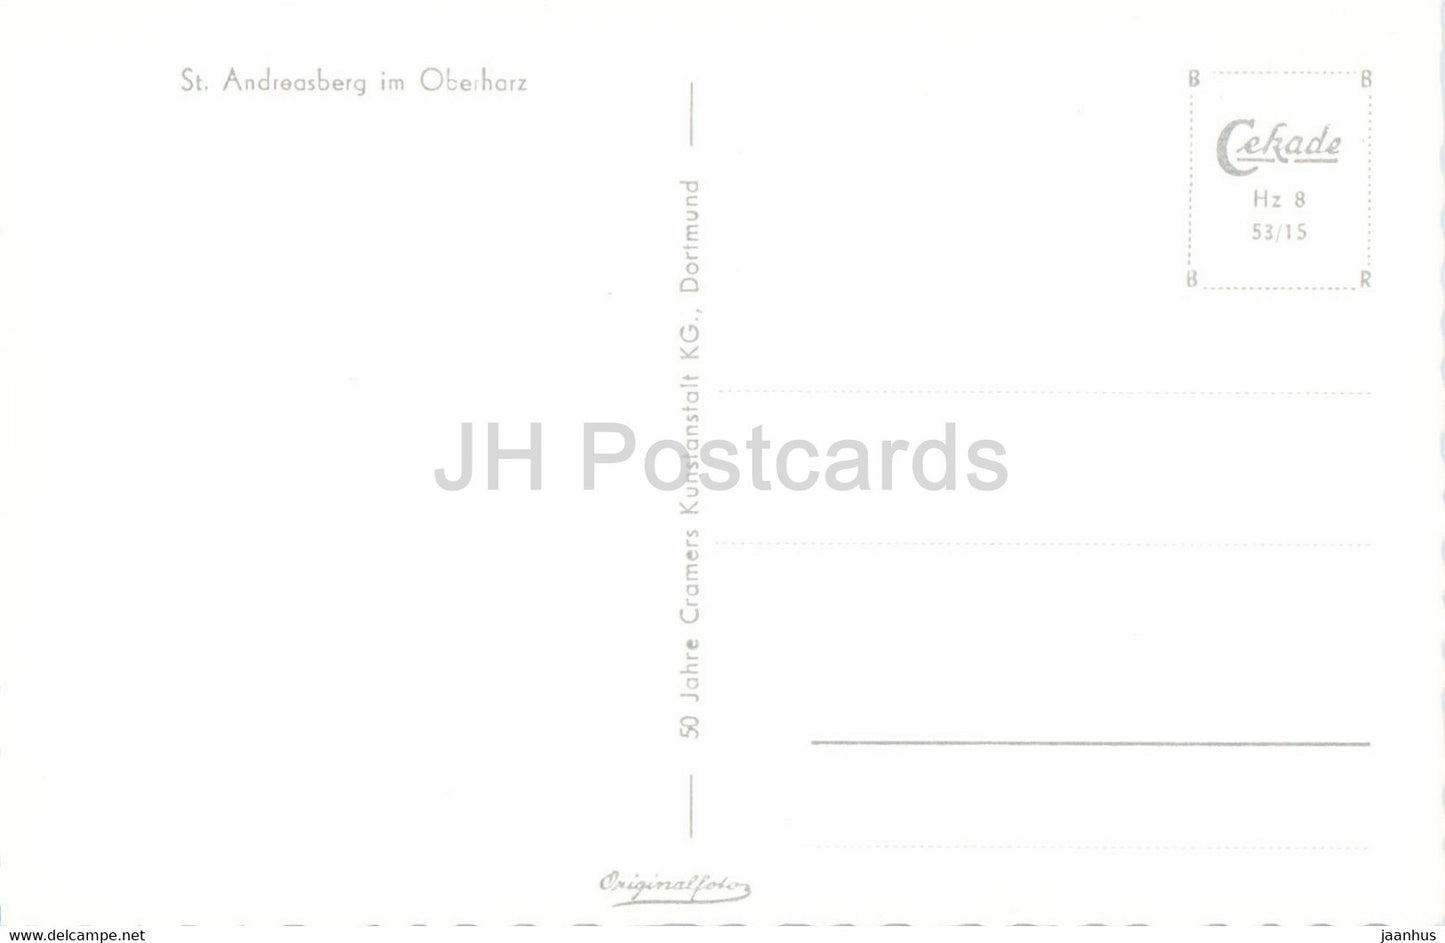 St. Andreasberg im Oberharz - alte Postkarte - Deutschland - unbenutzt